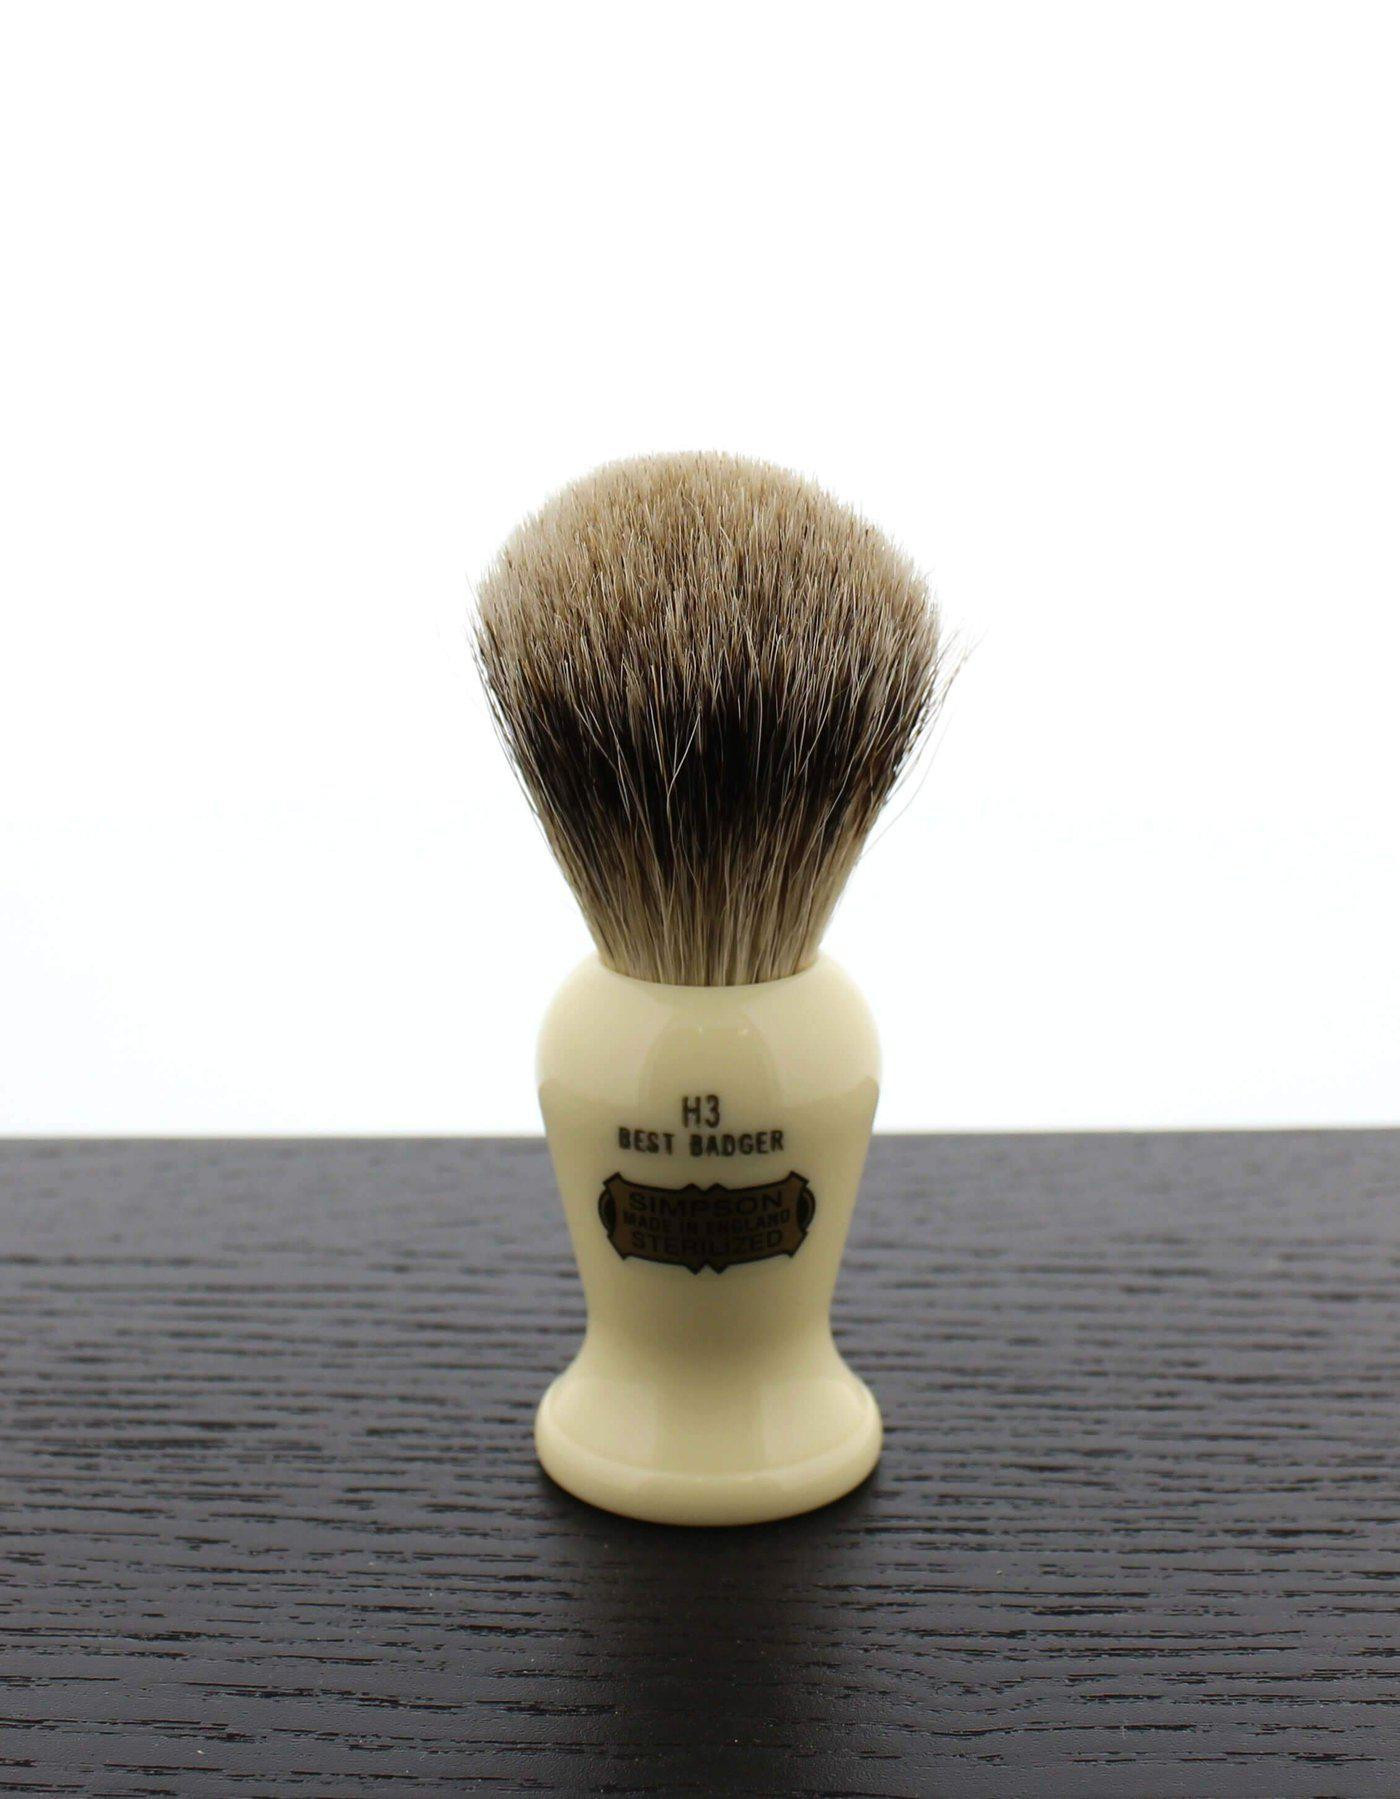 Product image 0 for Simpson Harvard H3 Best Badger Shaving Brush